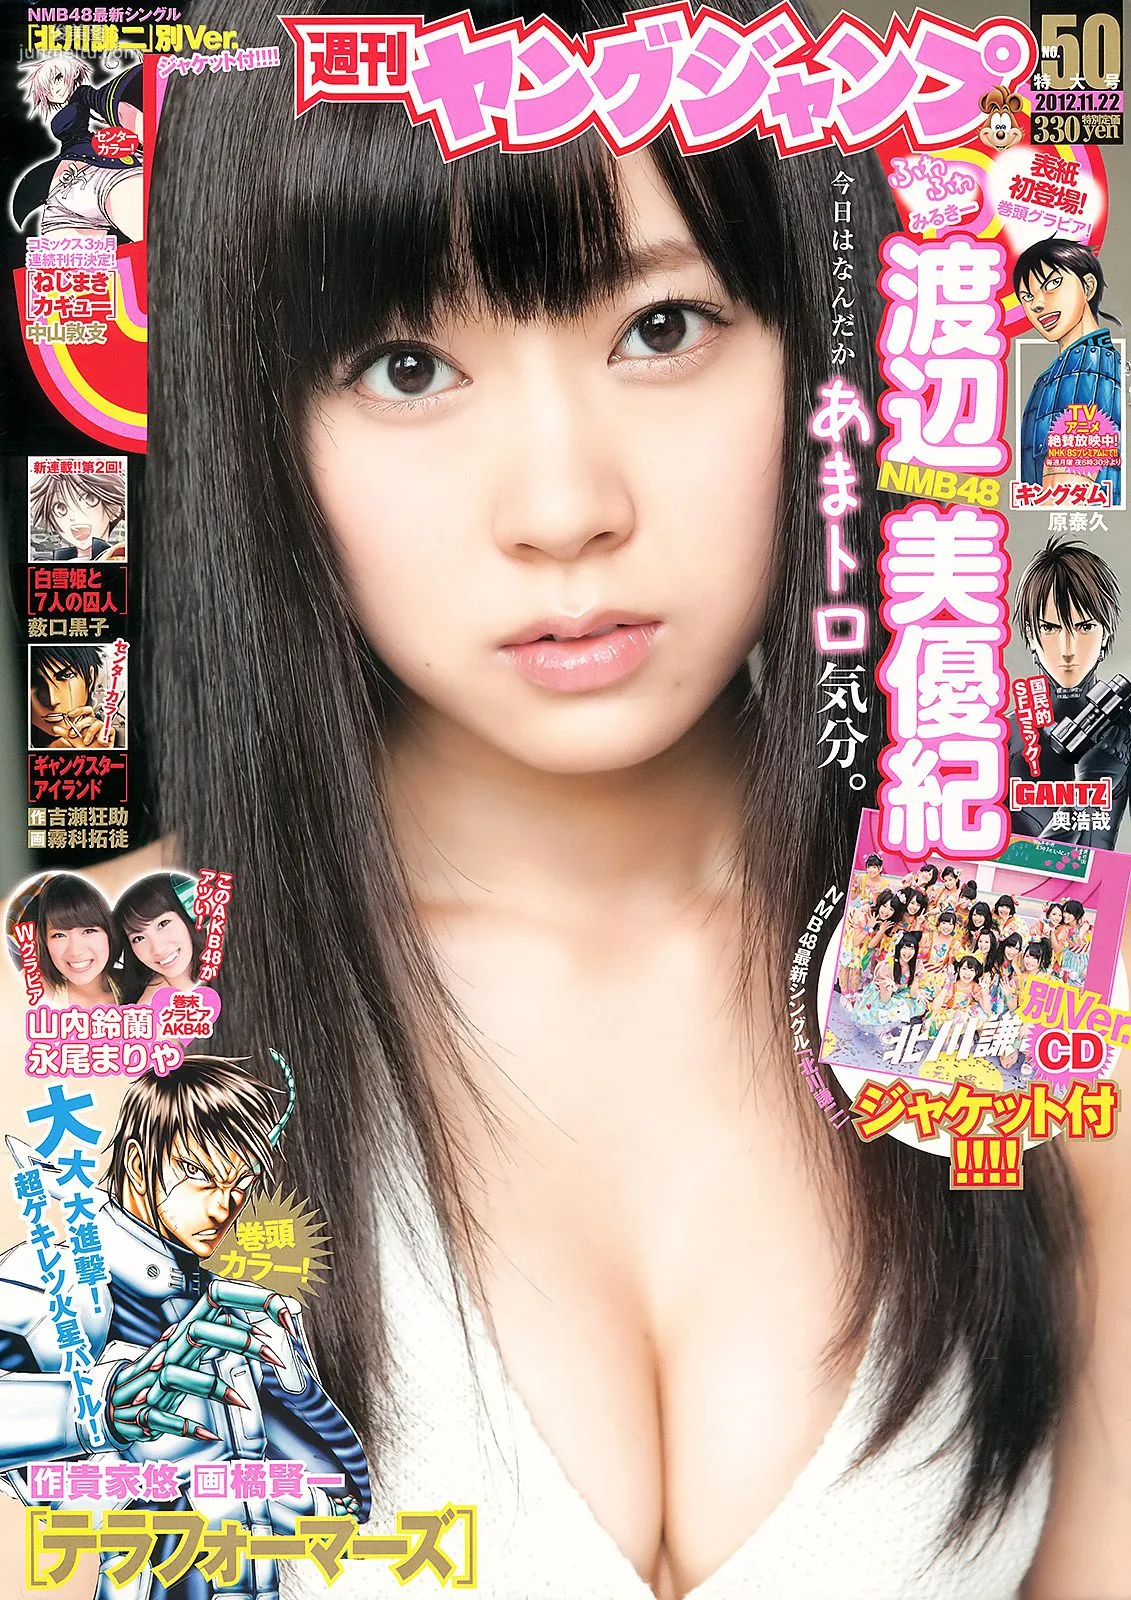 渡辺美優紀 山内鈴蘭 永尾まりや [Weekly Young Jump] 2012年No.50 写真杂志1